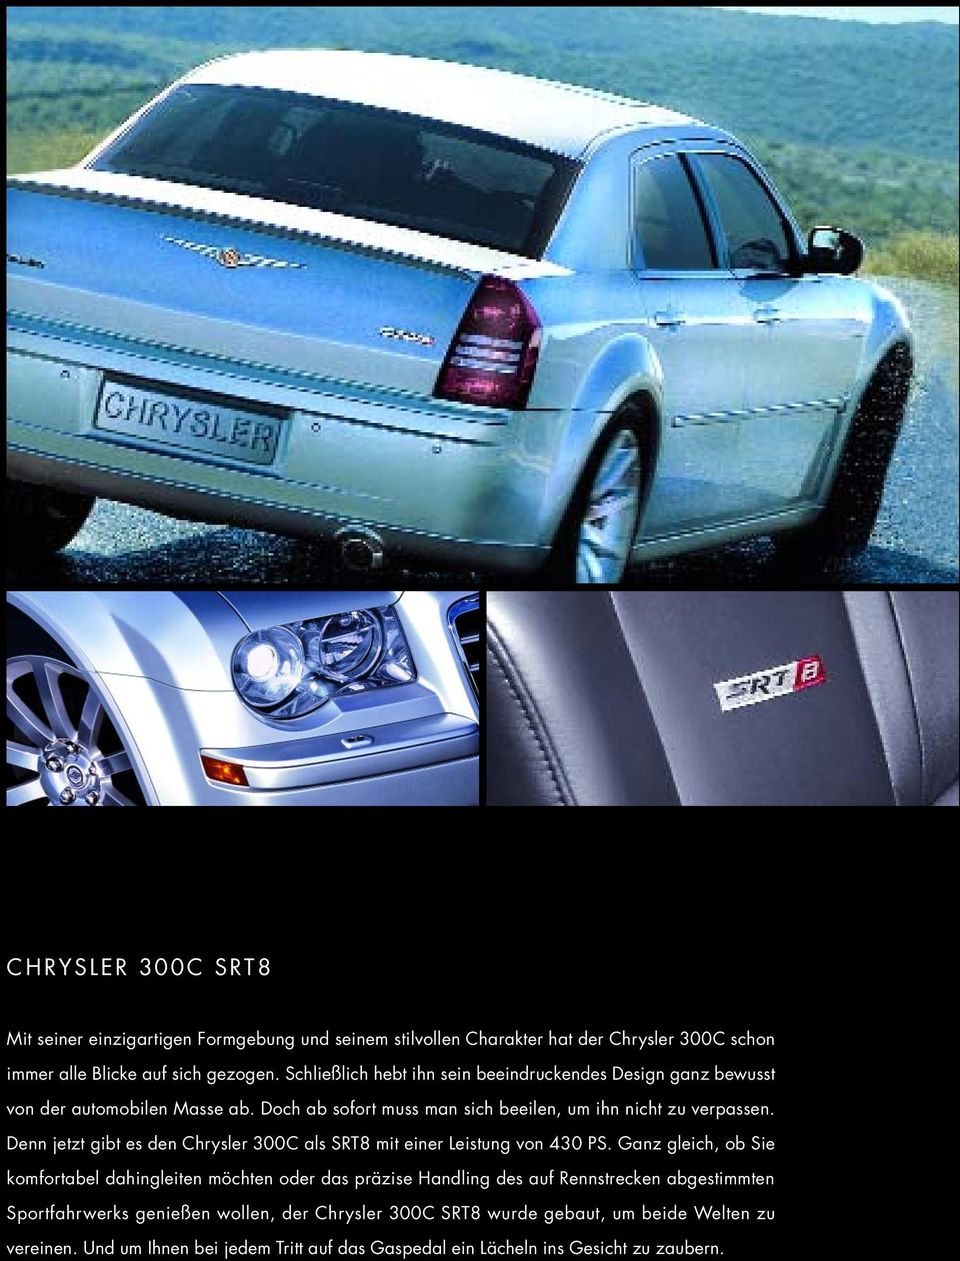 Denn jetzt gibt es den Chrysler 300C als SRT8 mit einer Leistung von 430 PS.